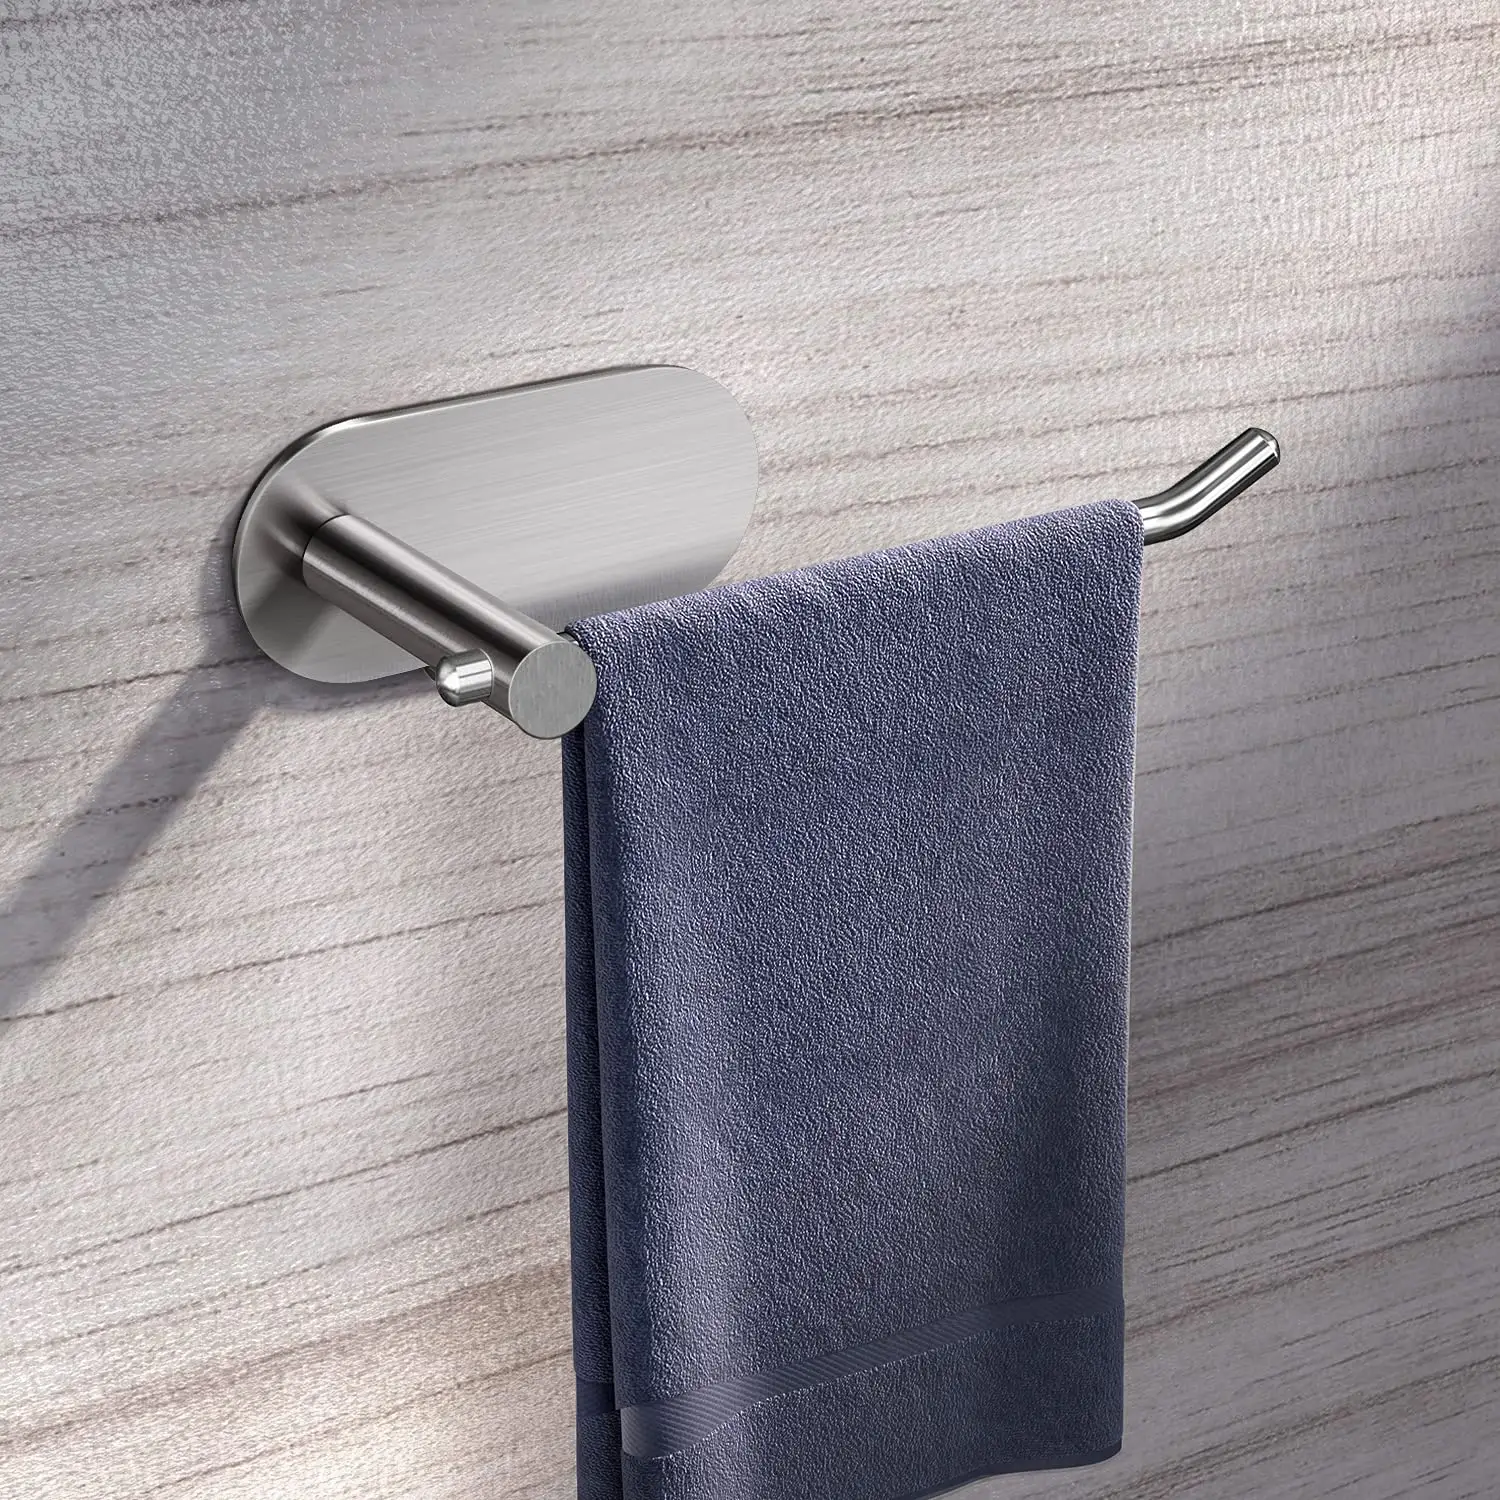 No Drilling Self Adhesive Stainless Steel Hand Towel Holder Bathroom Silver Towel Rack Towel Hooks